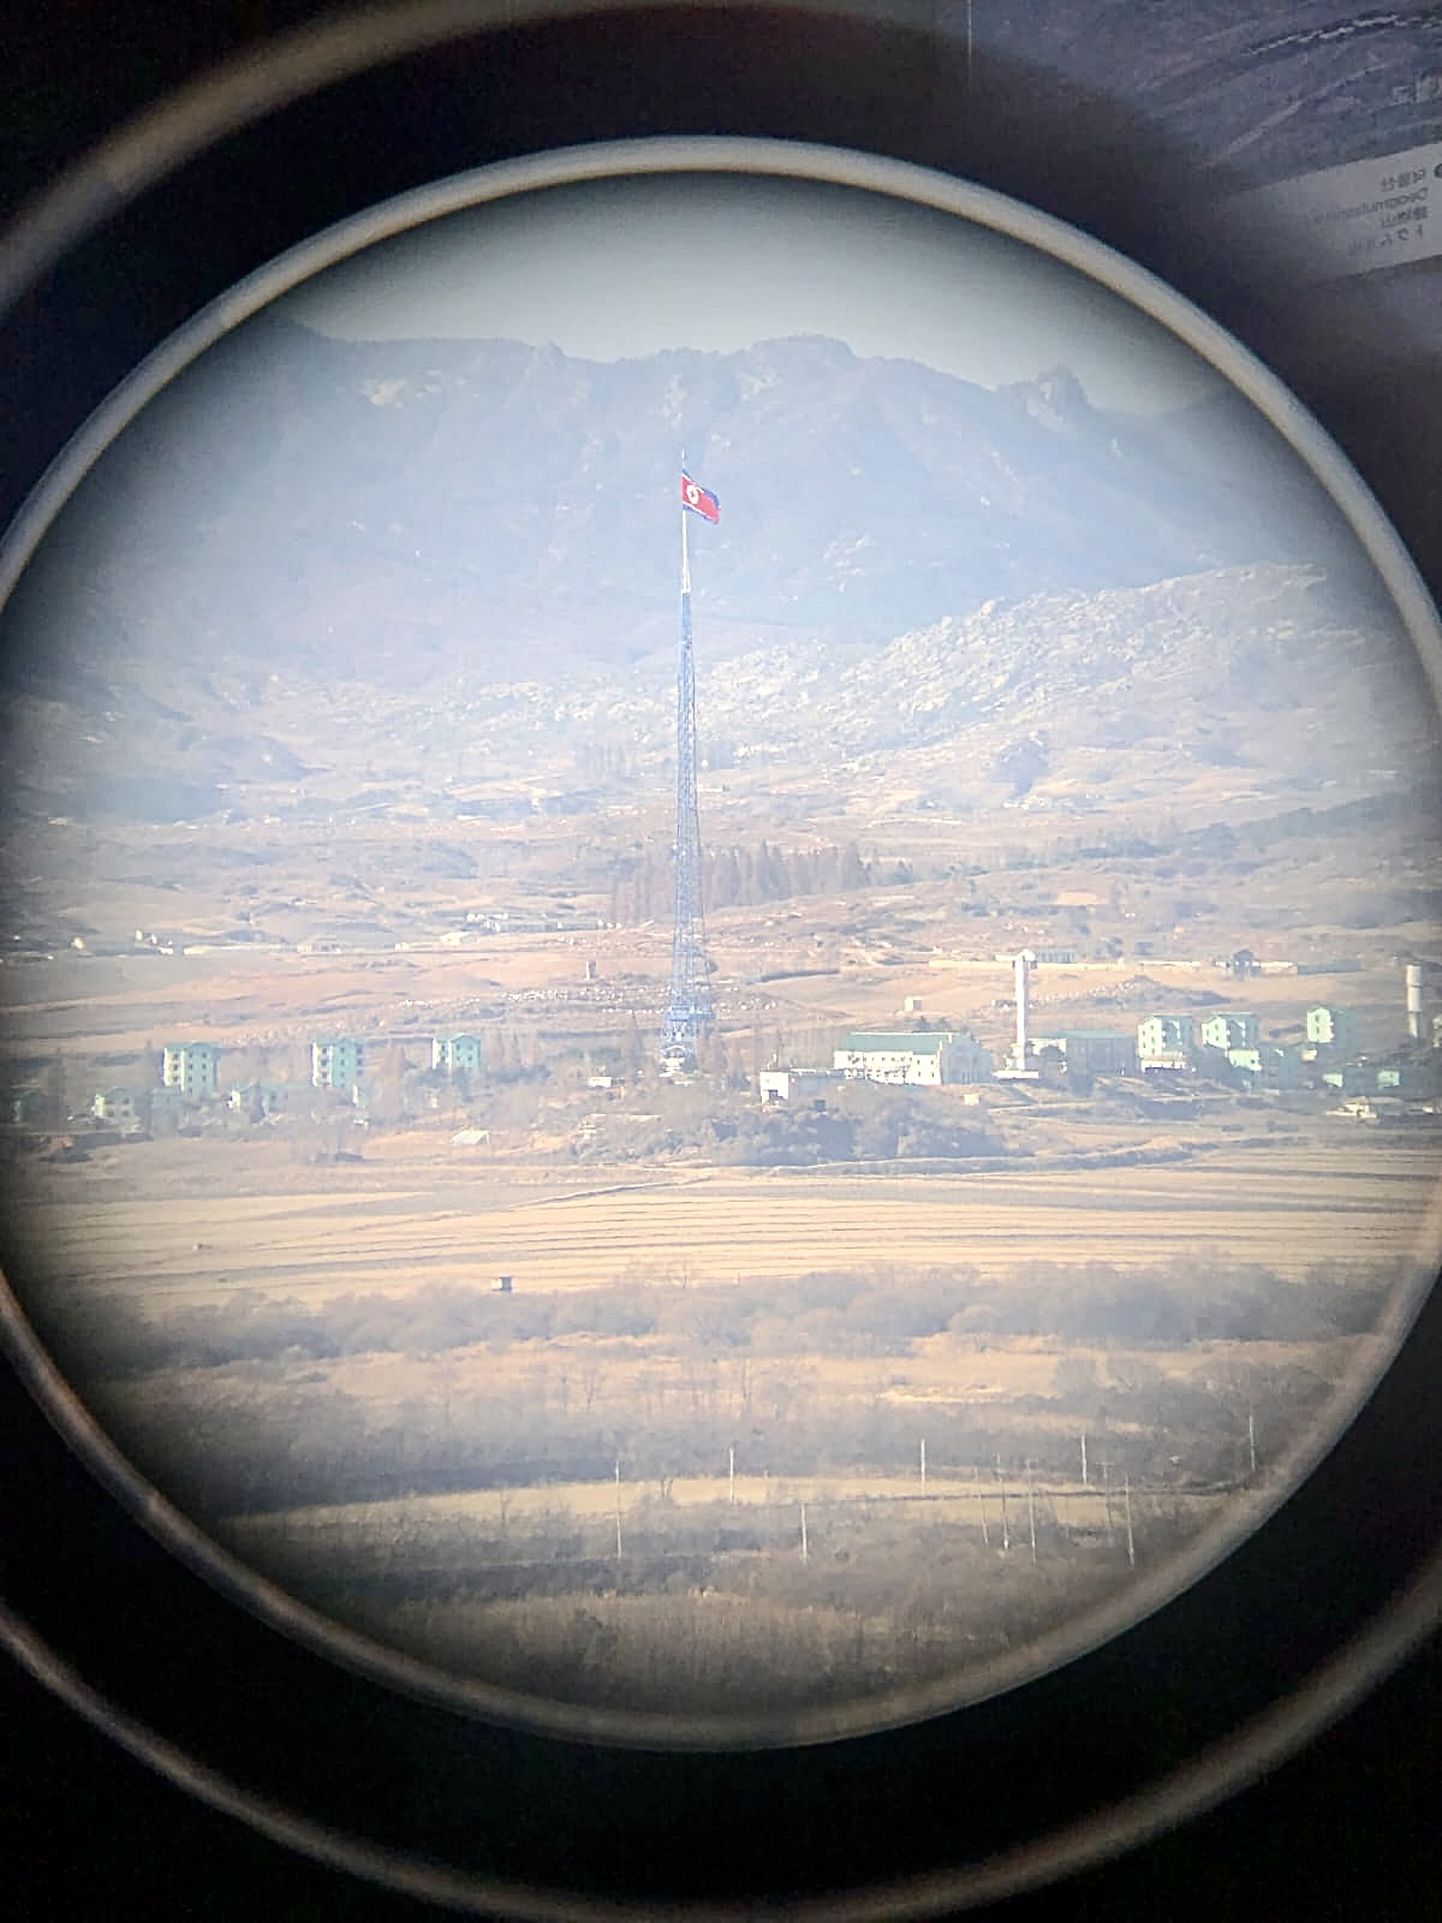 Lõuna-Korea külastajad viiakse sageli kahte Koread eraldavale piirile. Pildil vaade Põhja-Koreale läbi pikksilma.